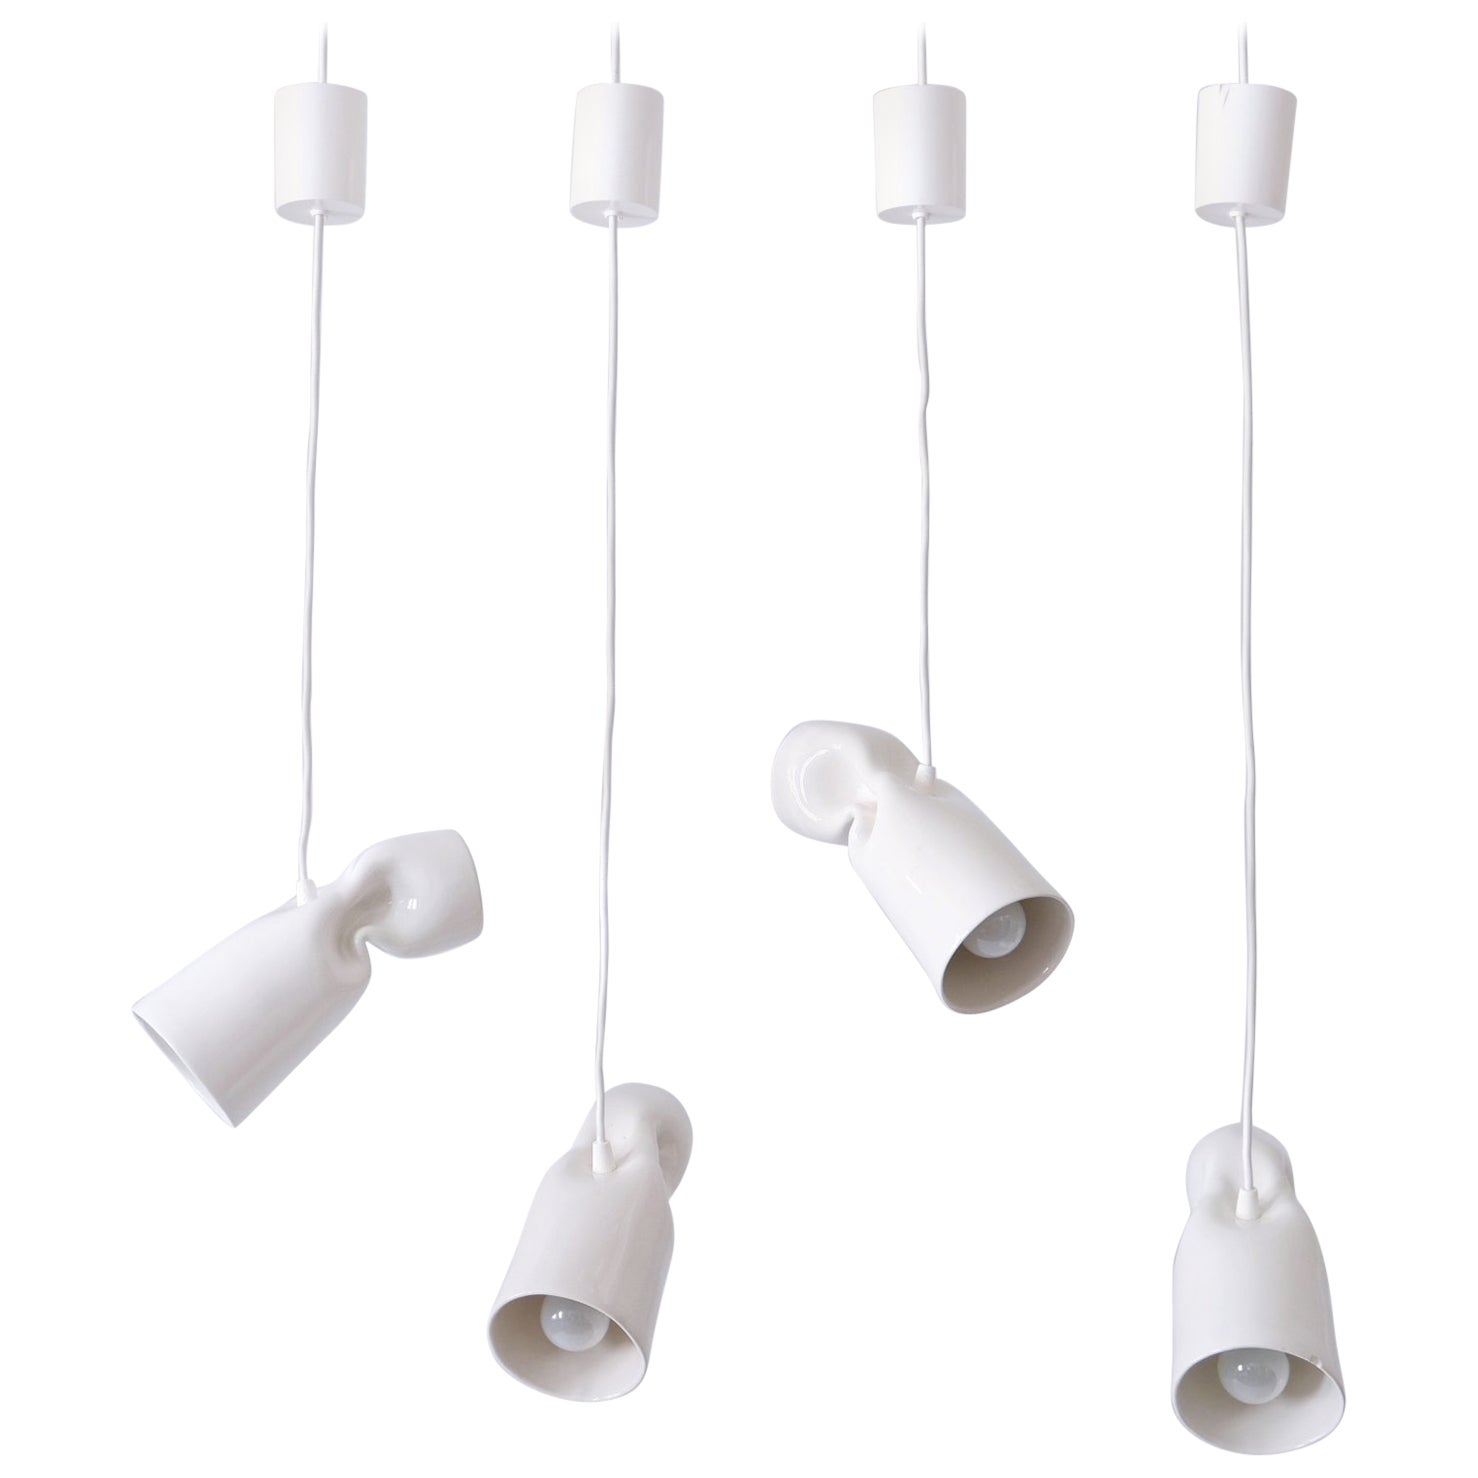 Set of Four Strangled Light Pendant Lamps by Gitta Gschwendtner for Artificial For Sale